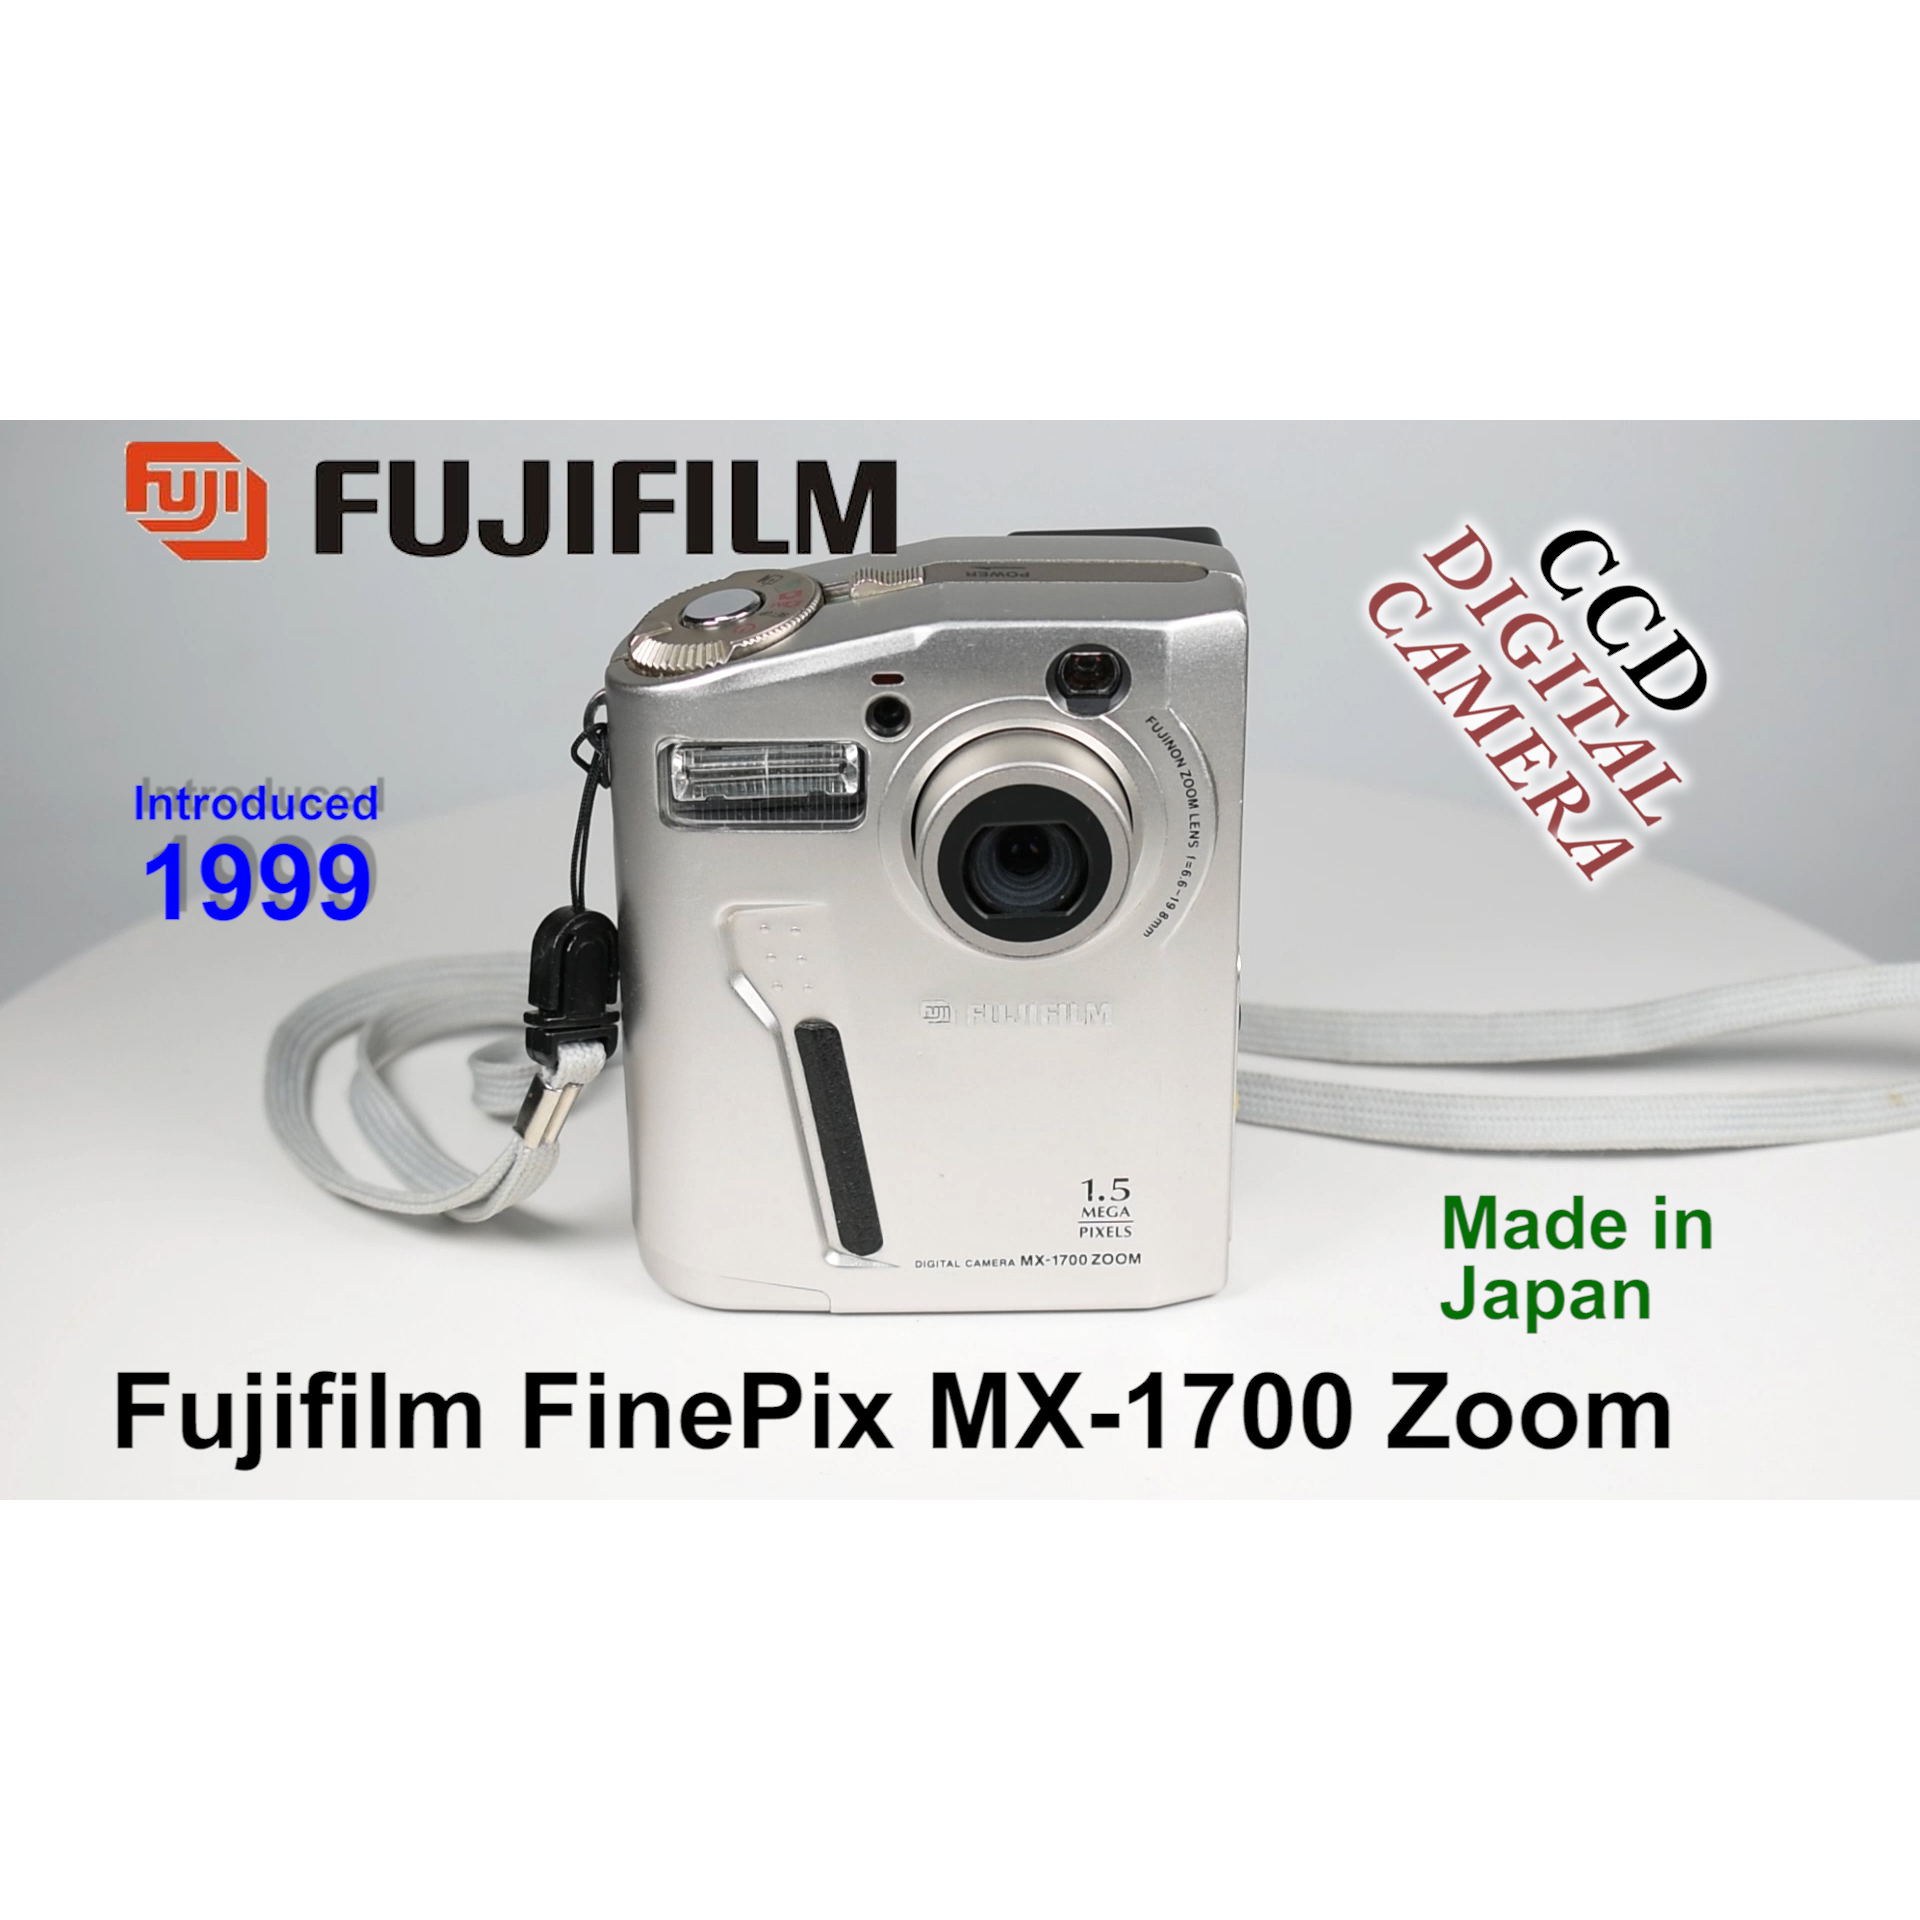 1999 Fujifilm FinePix MX-1700 Zoom – CCD Digital Camera